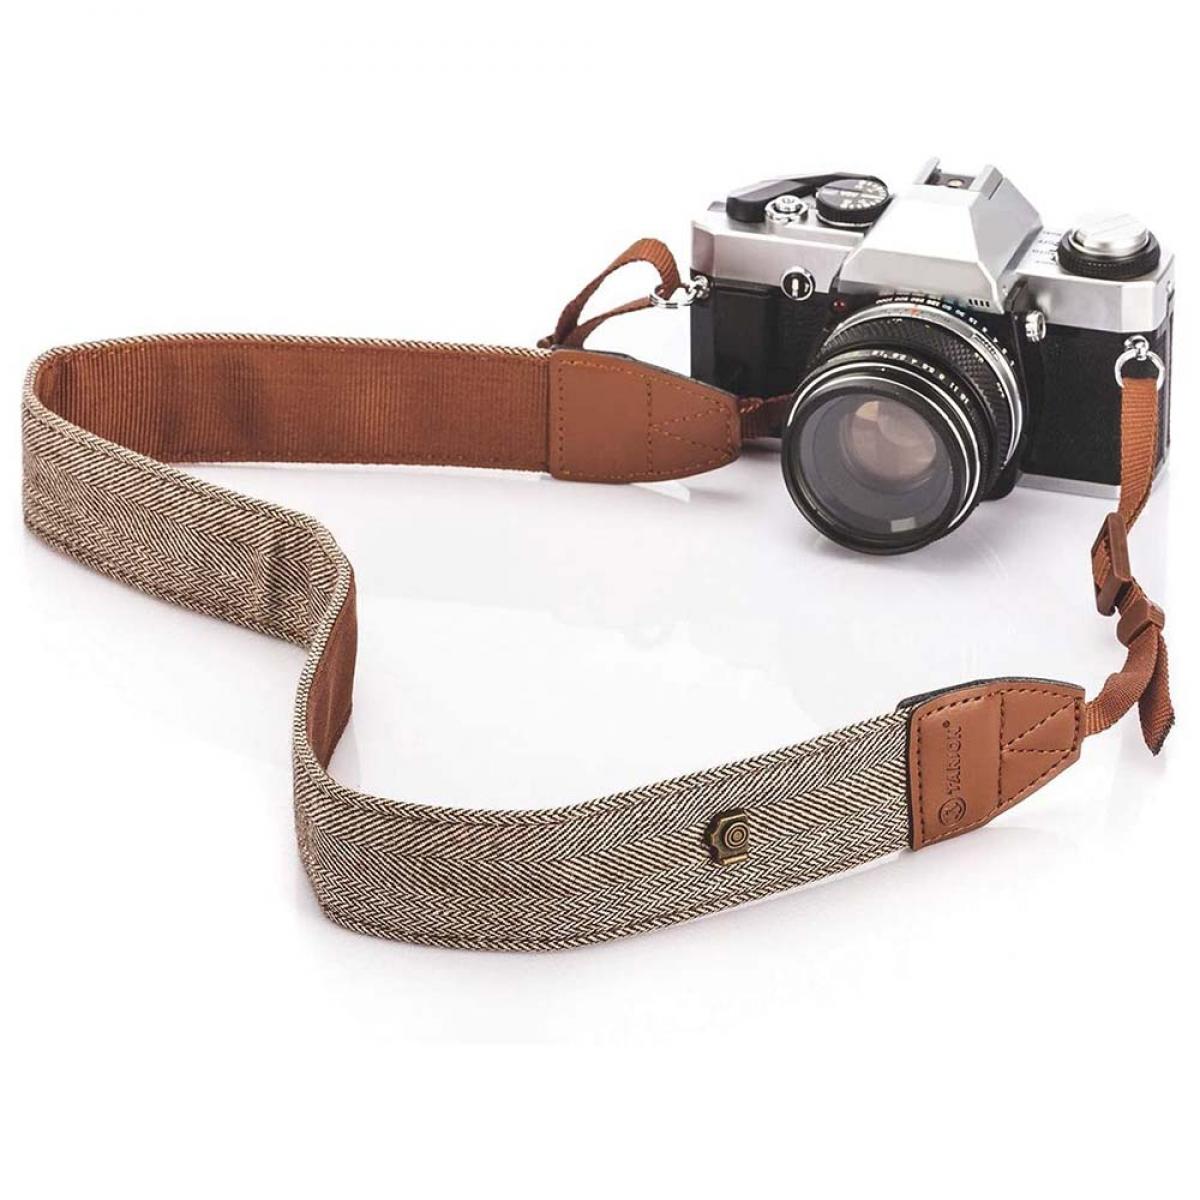 DSLR SLR Camera Collo Spalla Cintura Cinturino in cotone per Sony per Nikon DSLR 